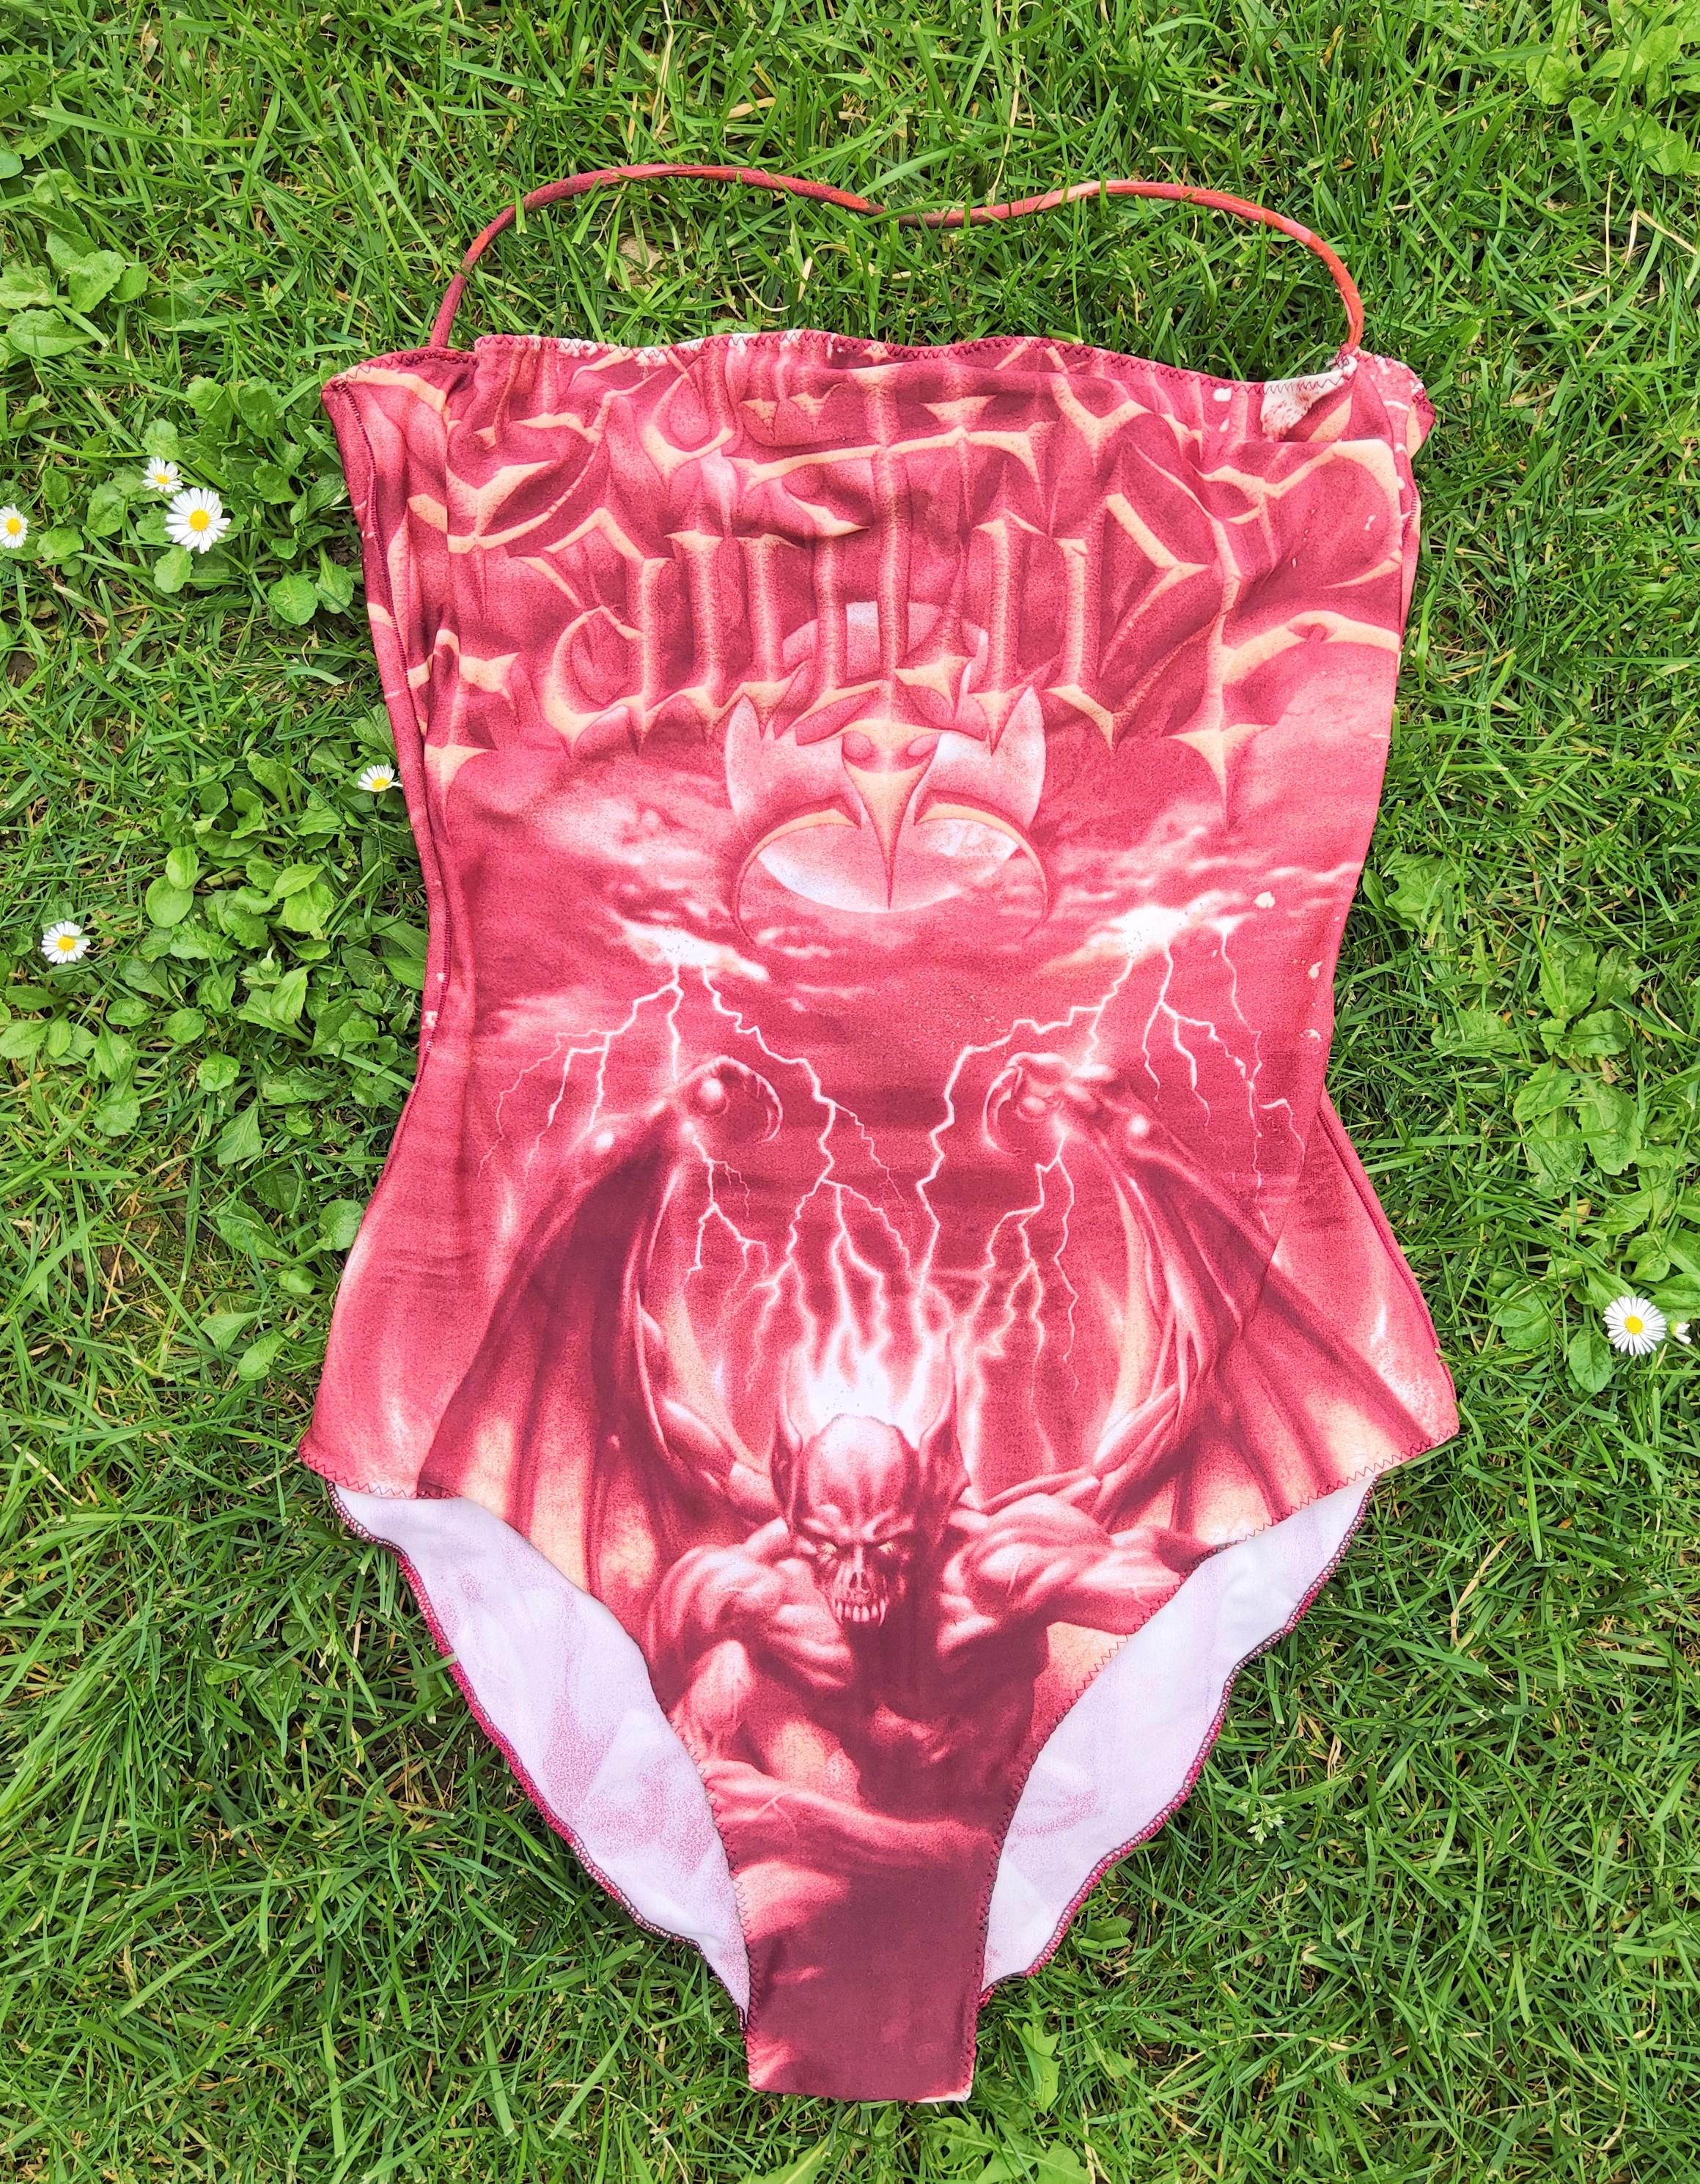 Der ikonische Satan-Badeanzug von Jean Paul Gaultier!

Referenzen prägten seine Frühjahr/Sommer-Kollektion 2001, wie die mit Rock-Motiven wie Totenköpfen, Fledermäusen und höllischen Flammen verzierte Einladungskarte der Show beweist. Zu diesem